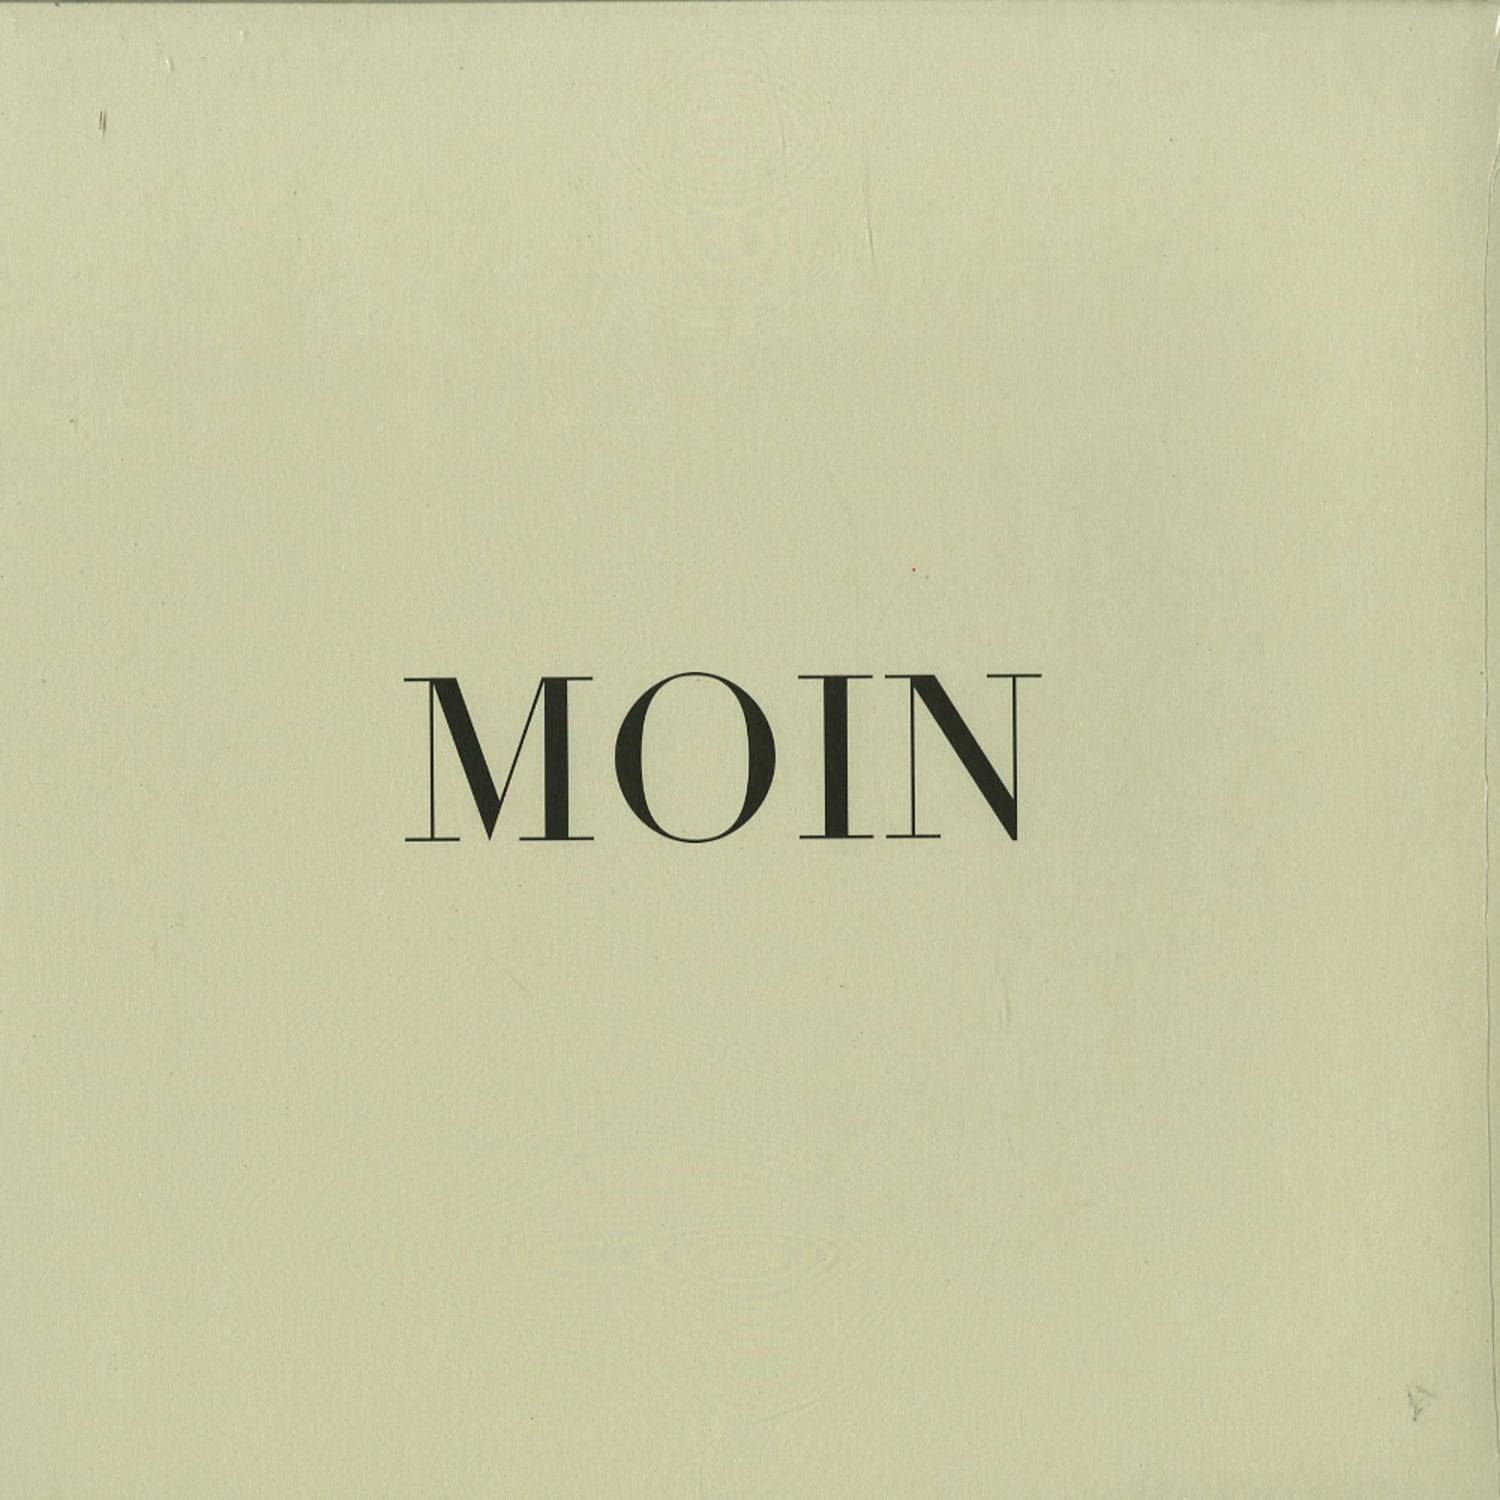 Moin - EP